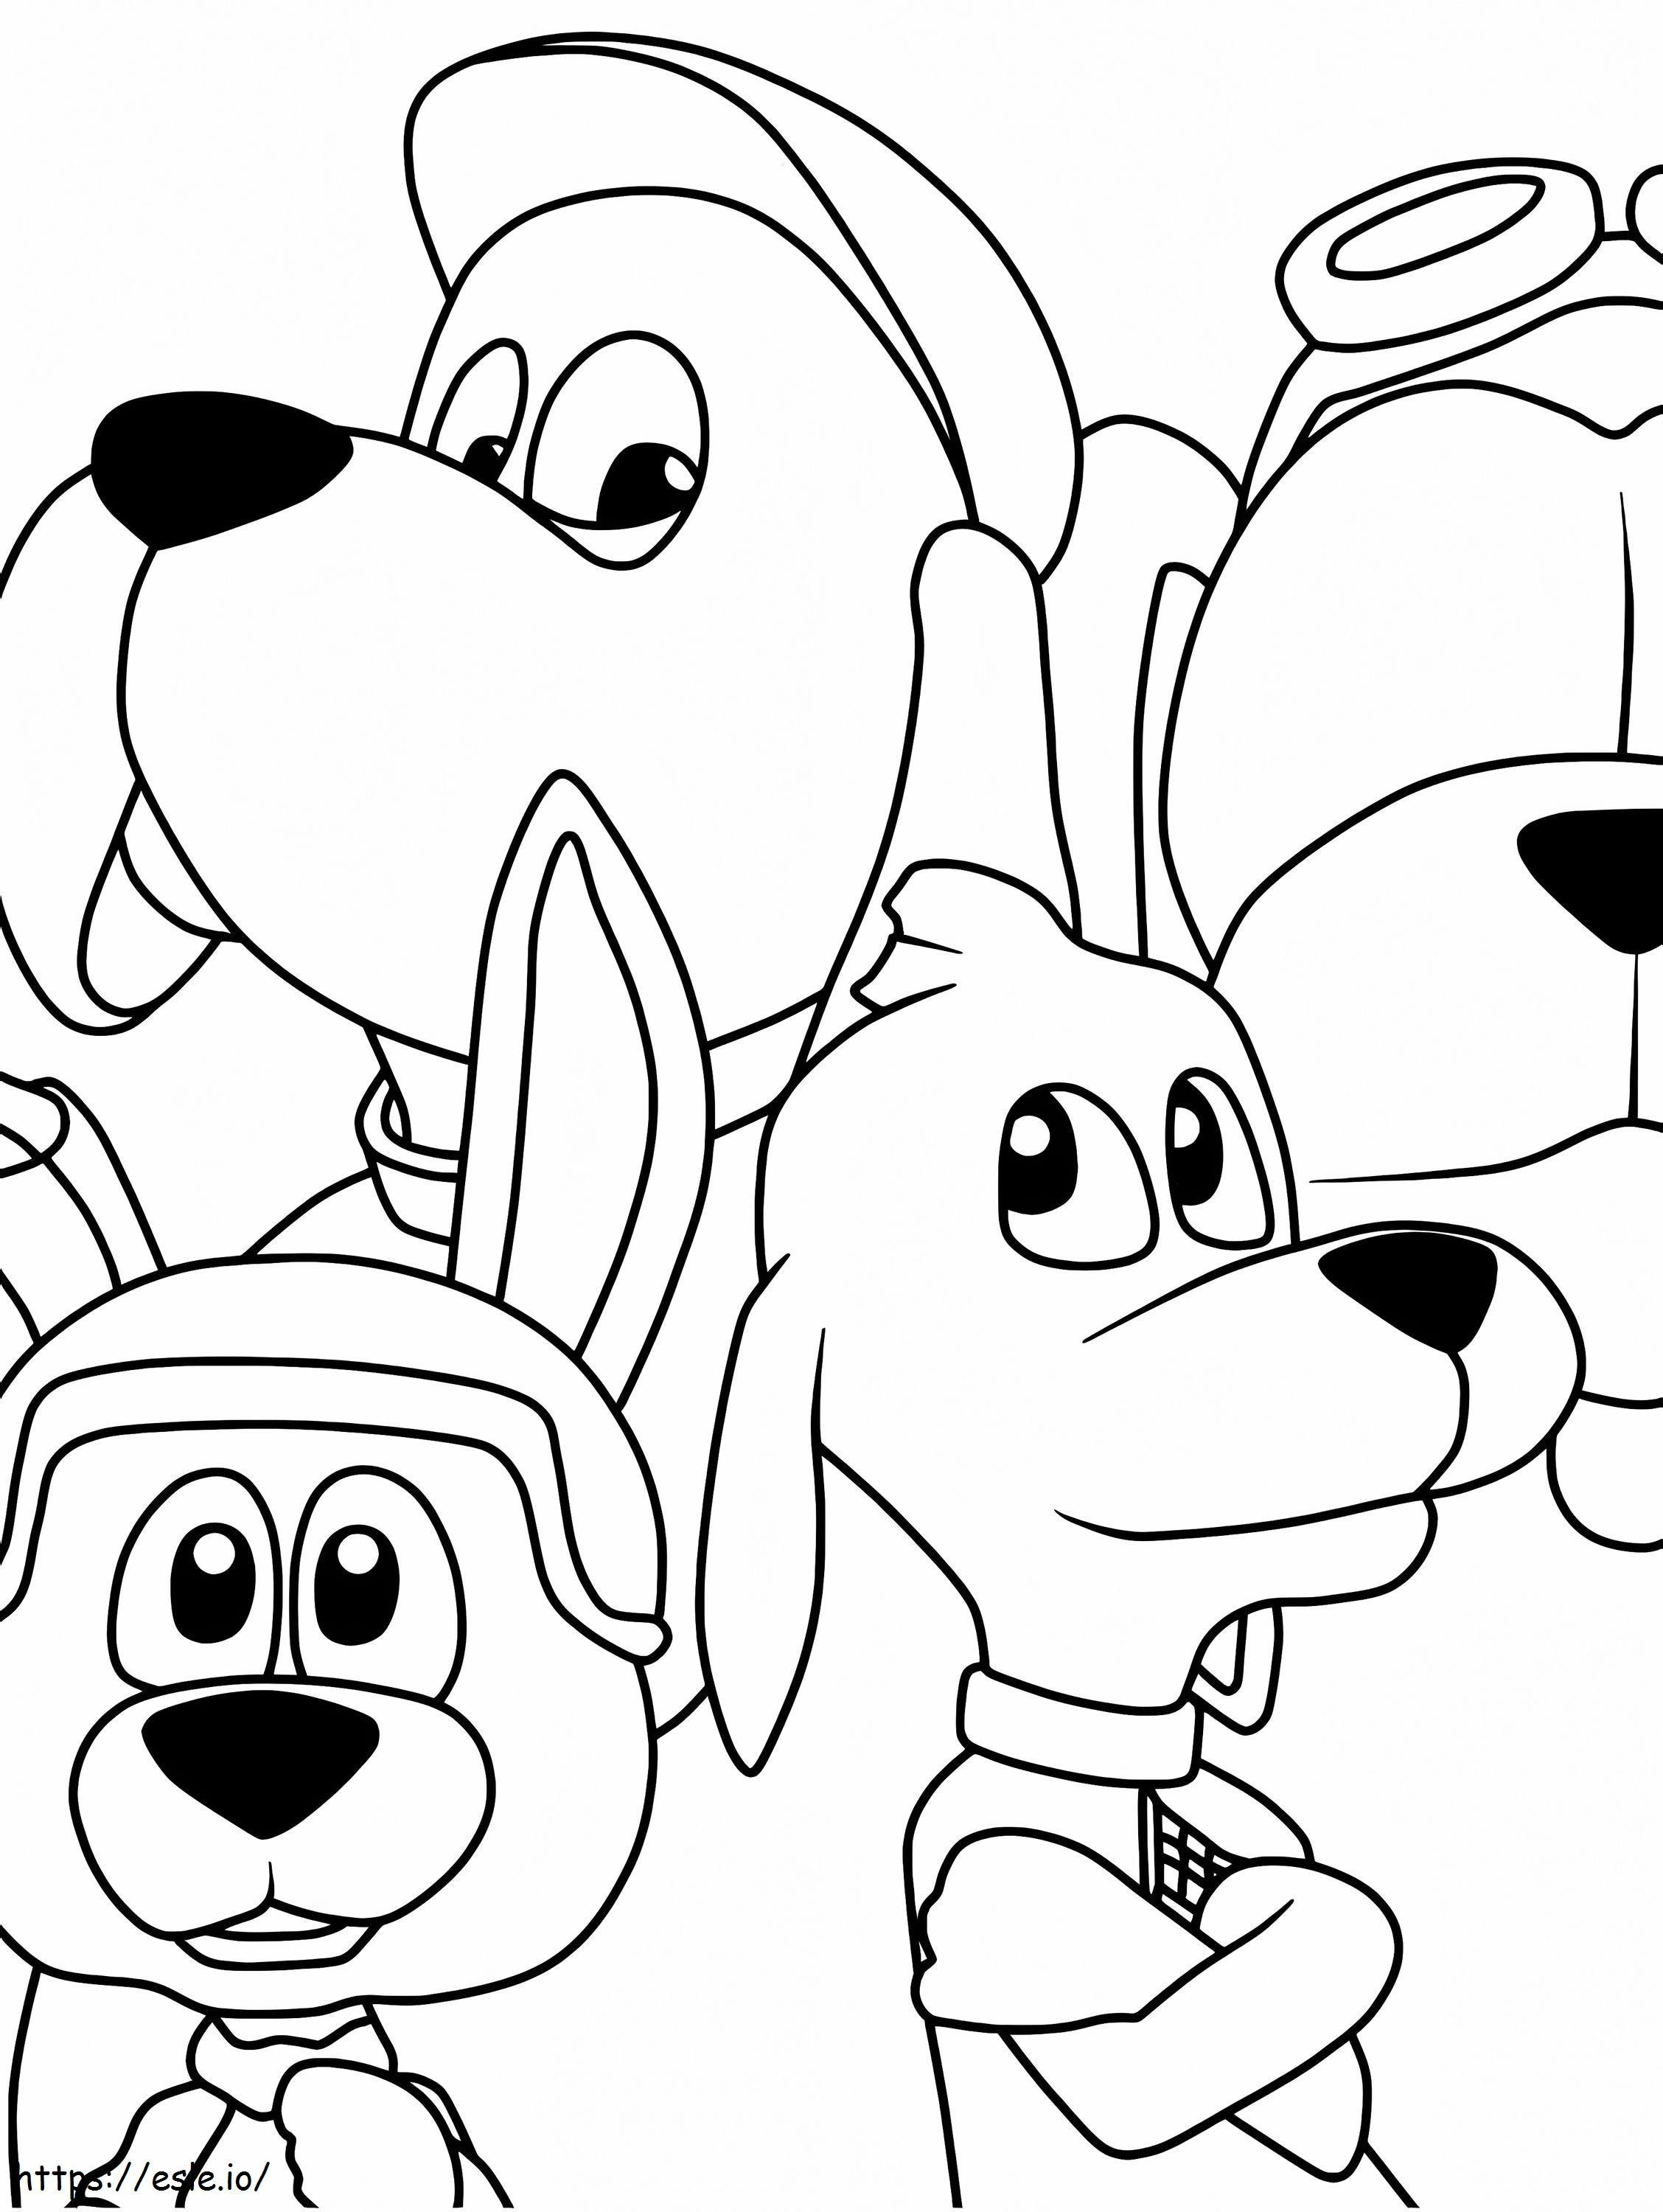 Personajes de Go Dog Go para colorear